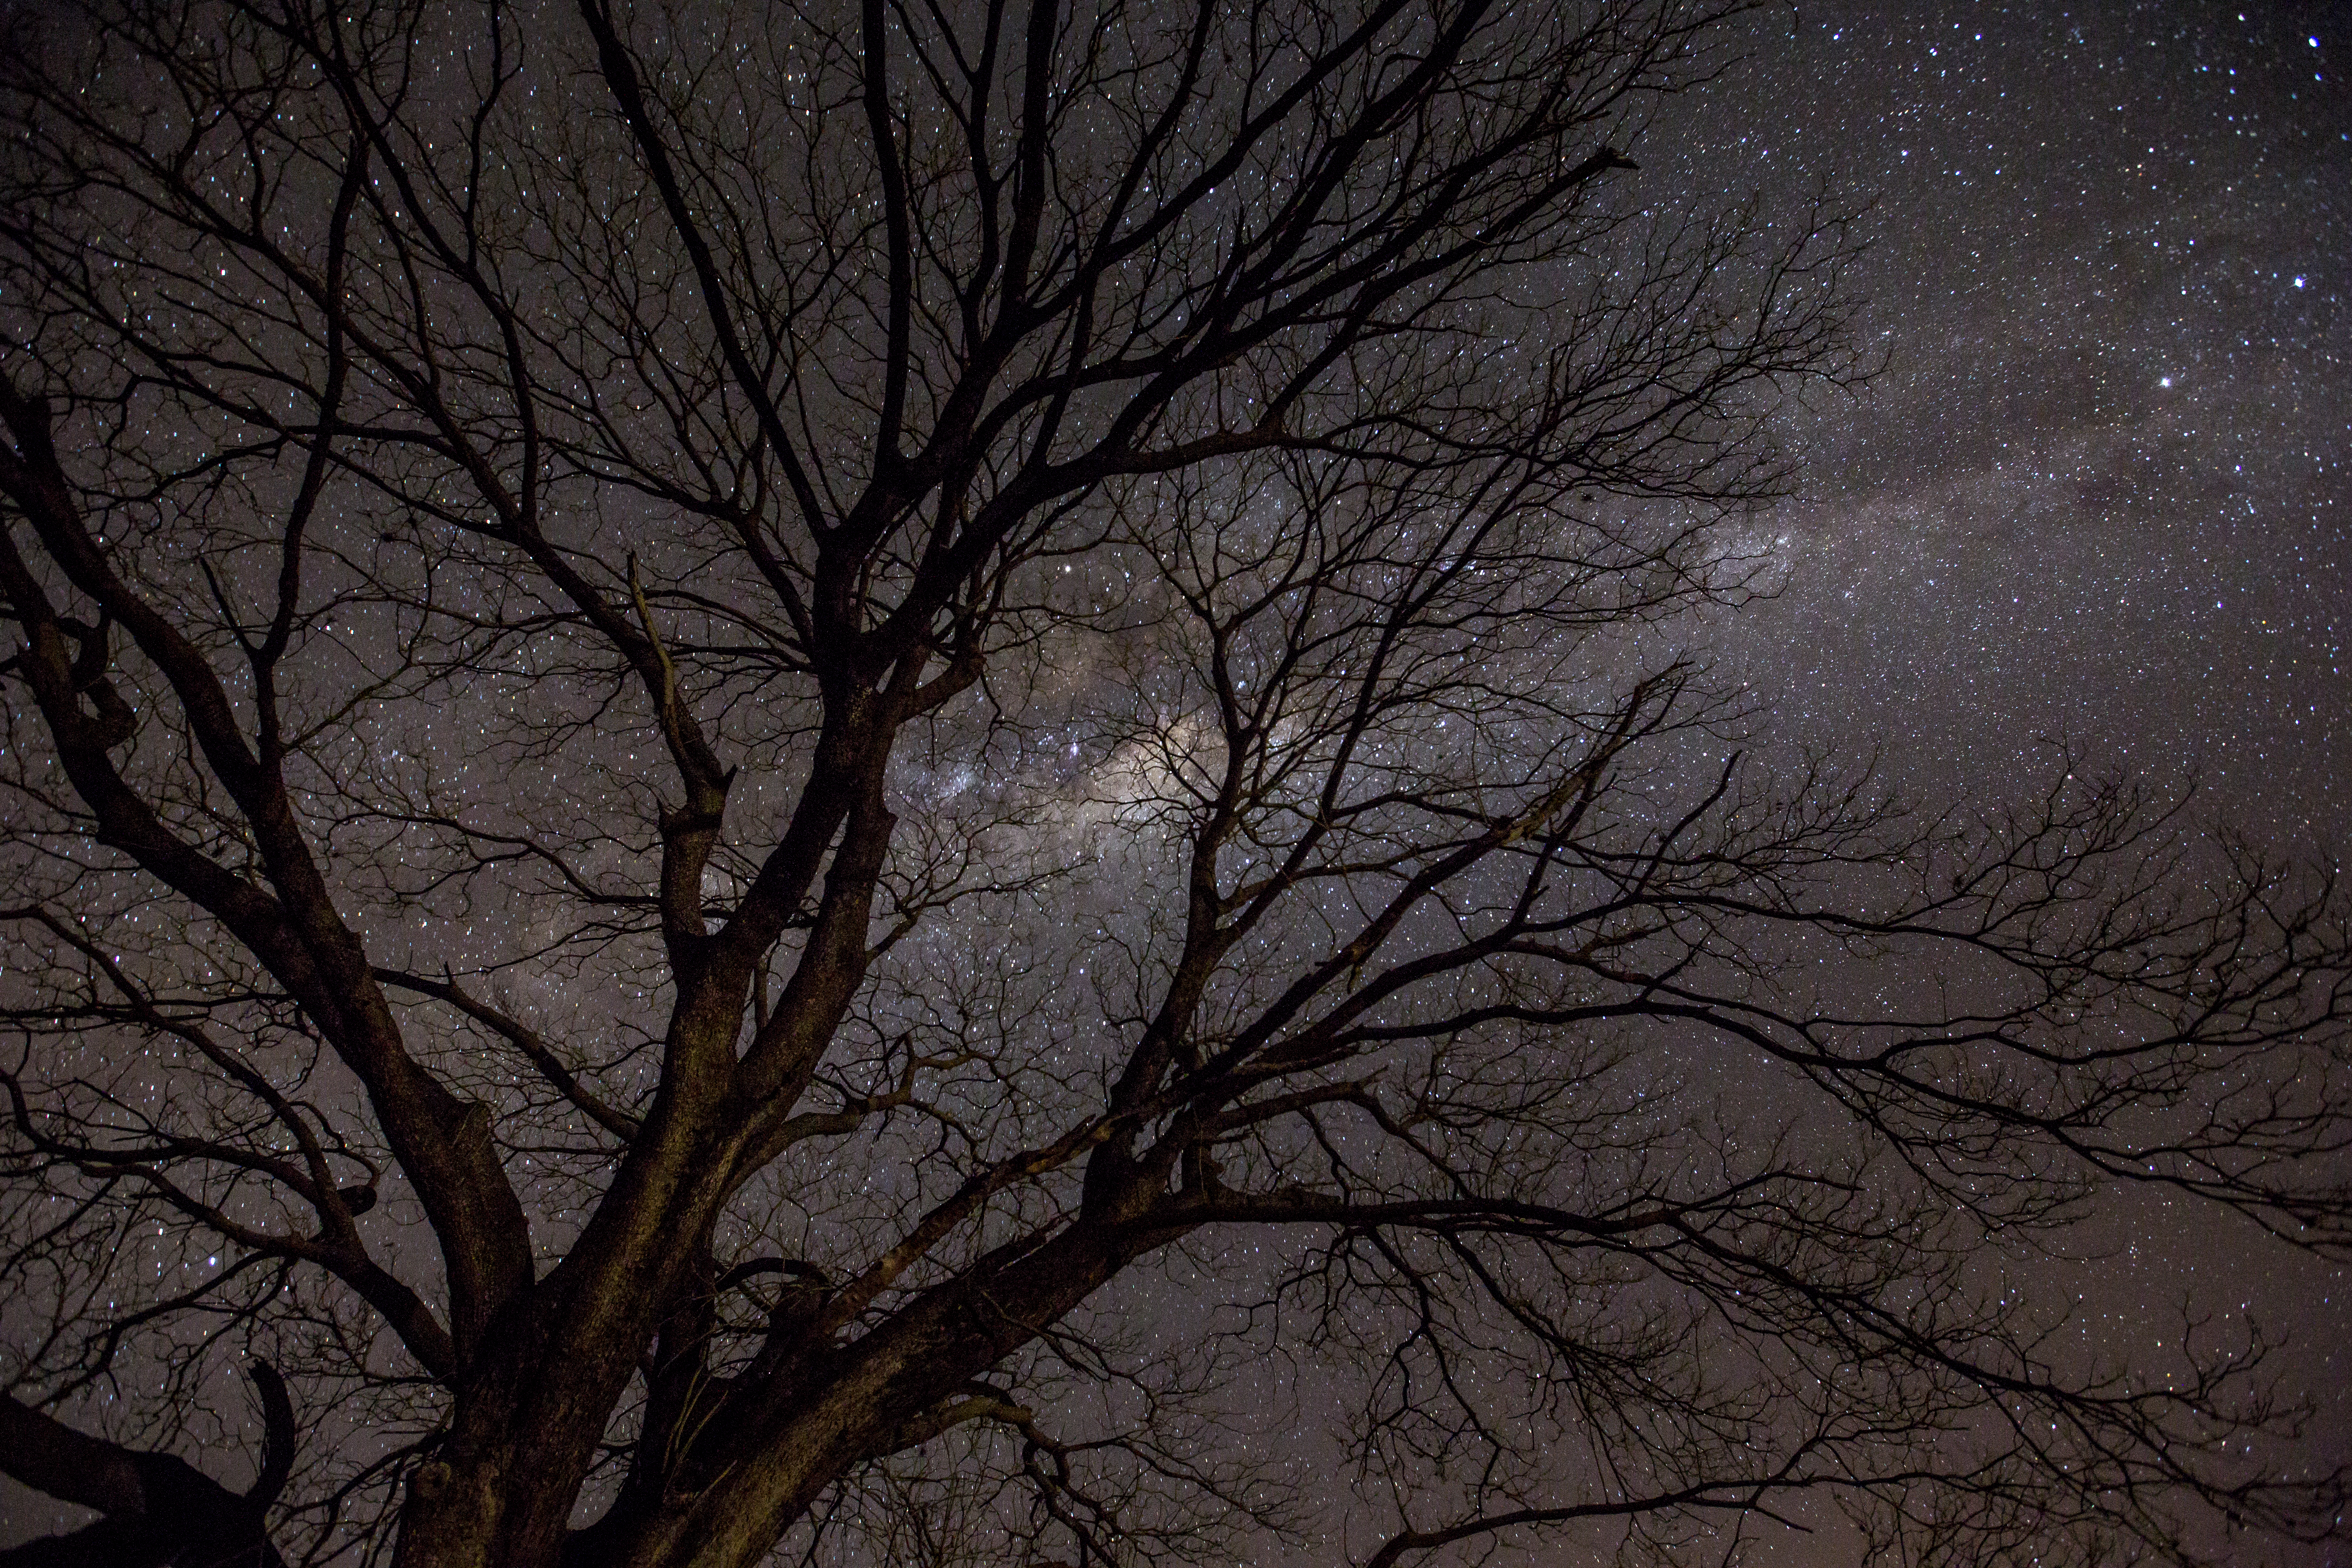 Imagem da Via Láctea também com a lente em posição 16 mm, mas com um plano mais fechado